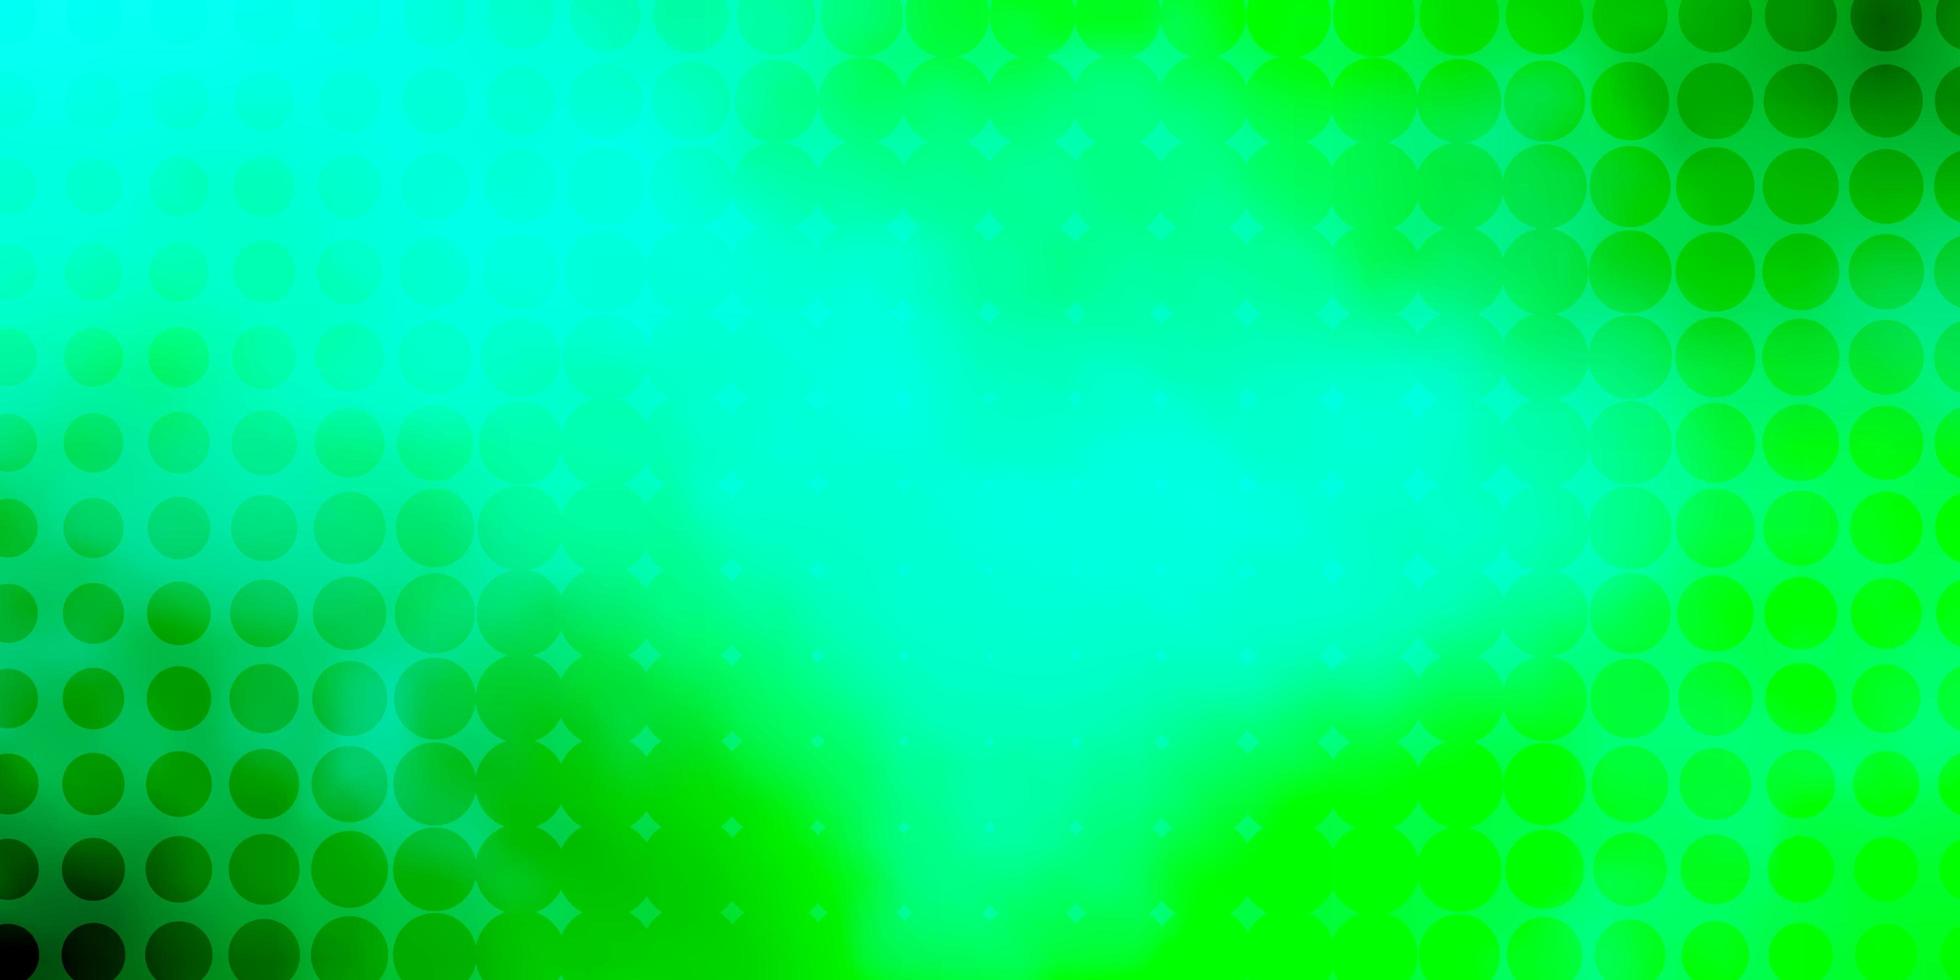 ljusgrönt vektormönster med cirklar. vektor